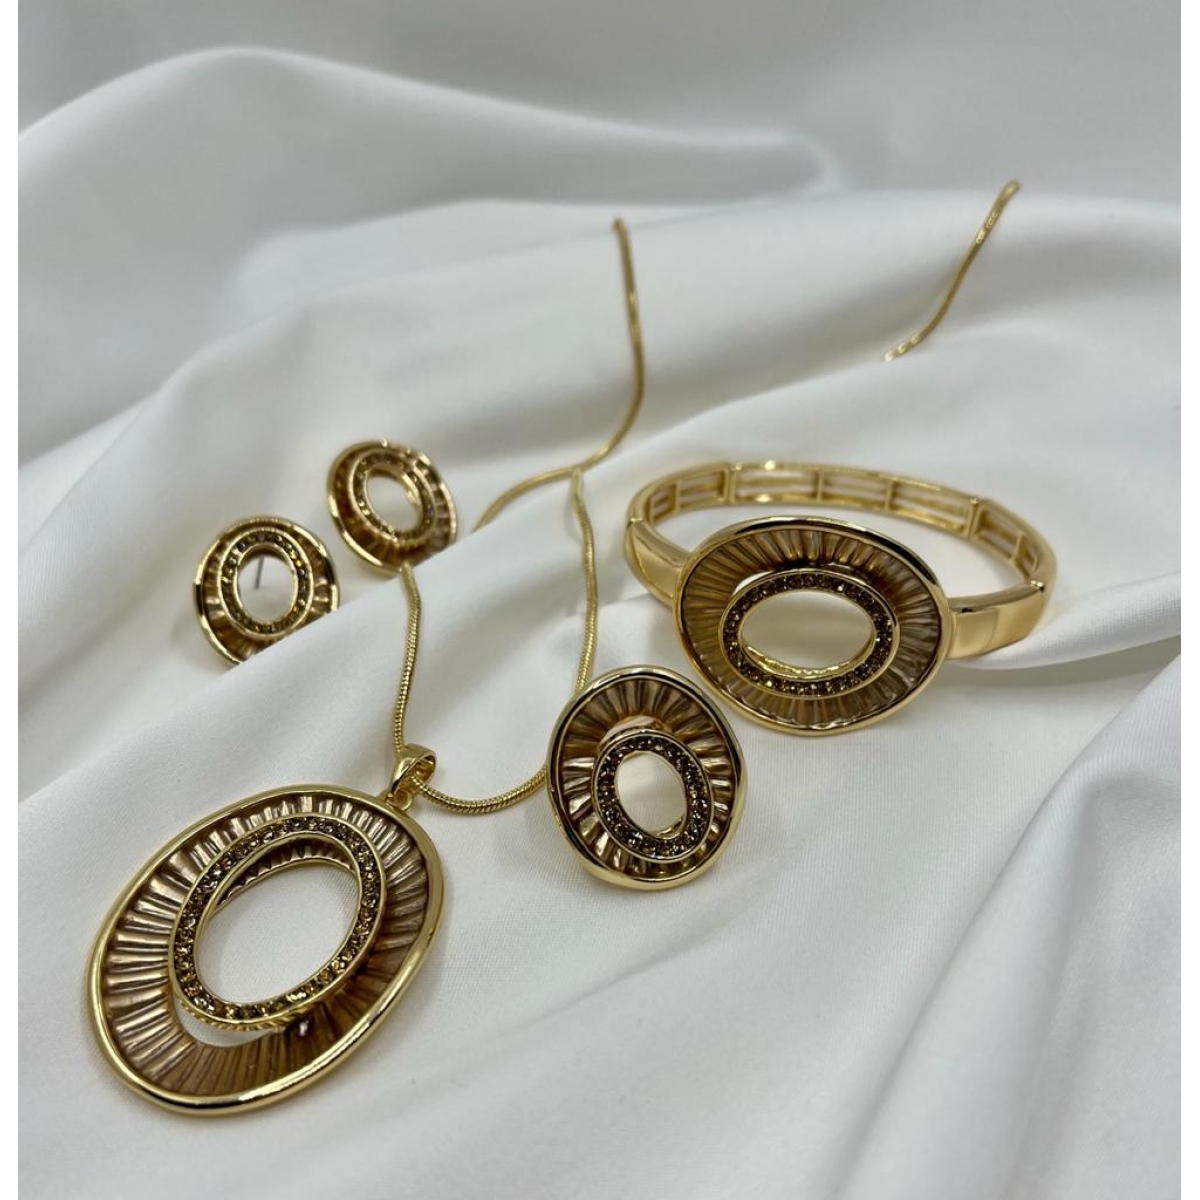 Súprava luxusná pozlátená náhrdelníka , náušníc , náramkov a prsteň zdobená s oválovým príveskom s drobnými krištáľmi